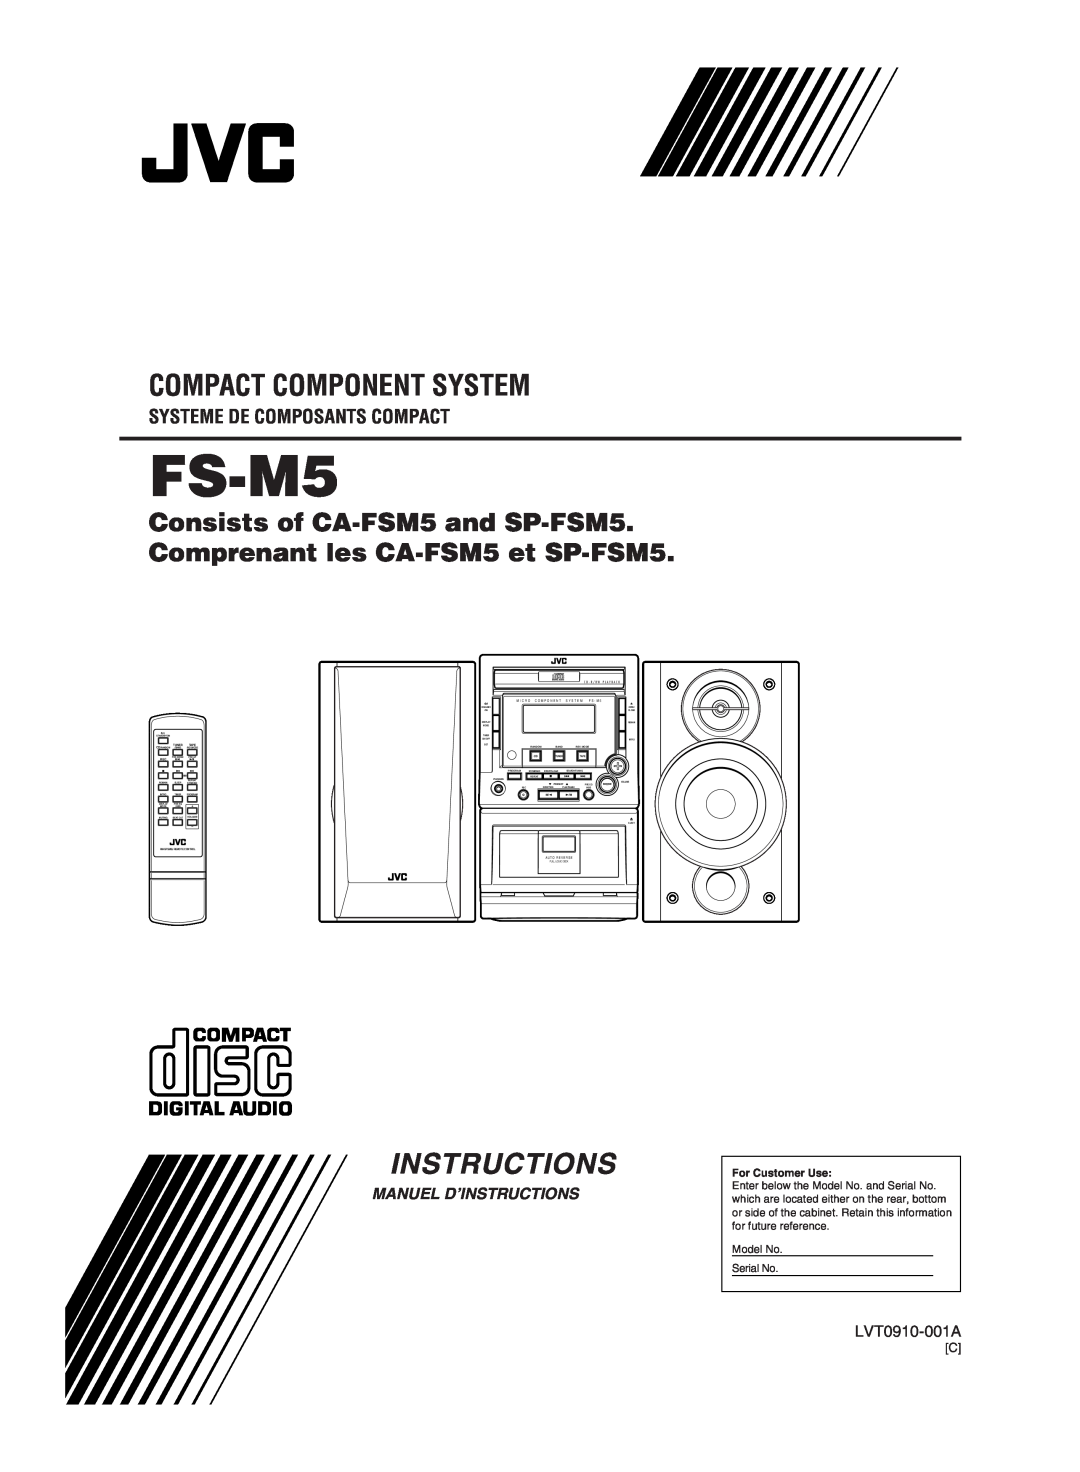 JVC FS-M5 manual Systeme De Composants Compact, Compact Component System, Manuel D’Instructions, LVT0910-001A 